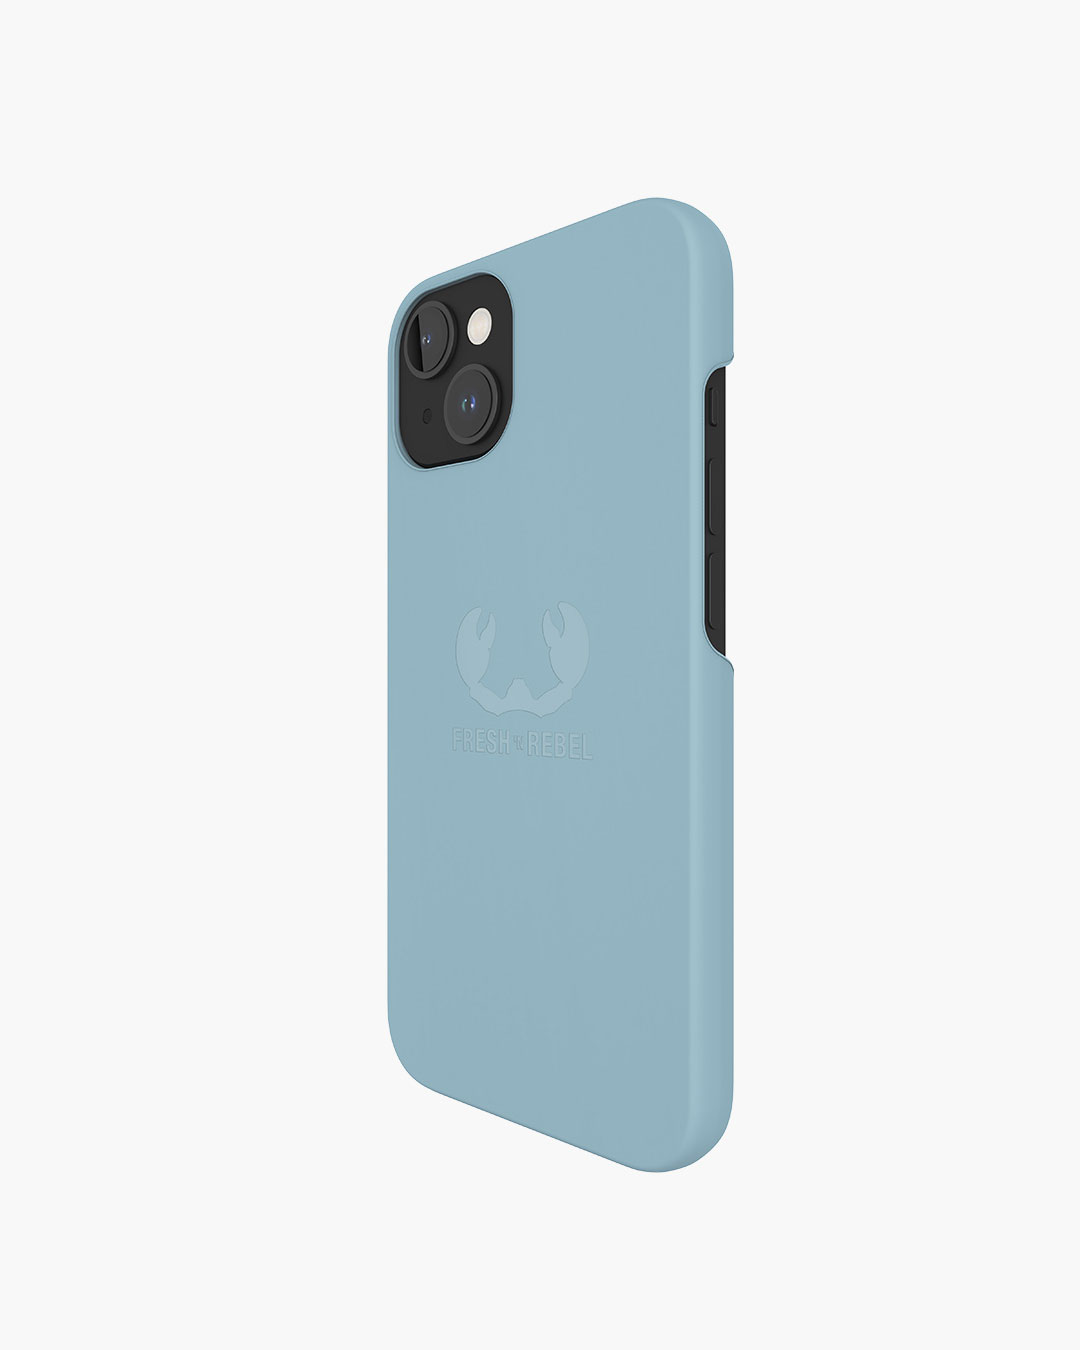 Fresh 'n Rebel - Phone Case iPhone 13 - Dusty Blue